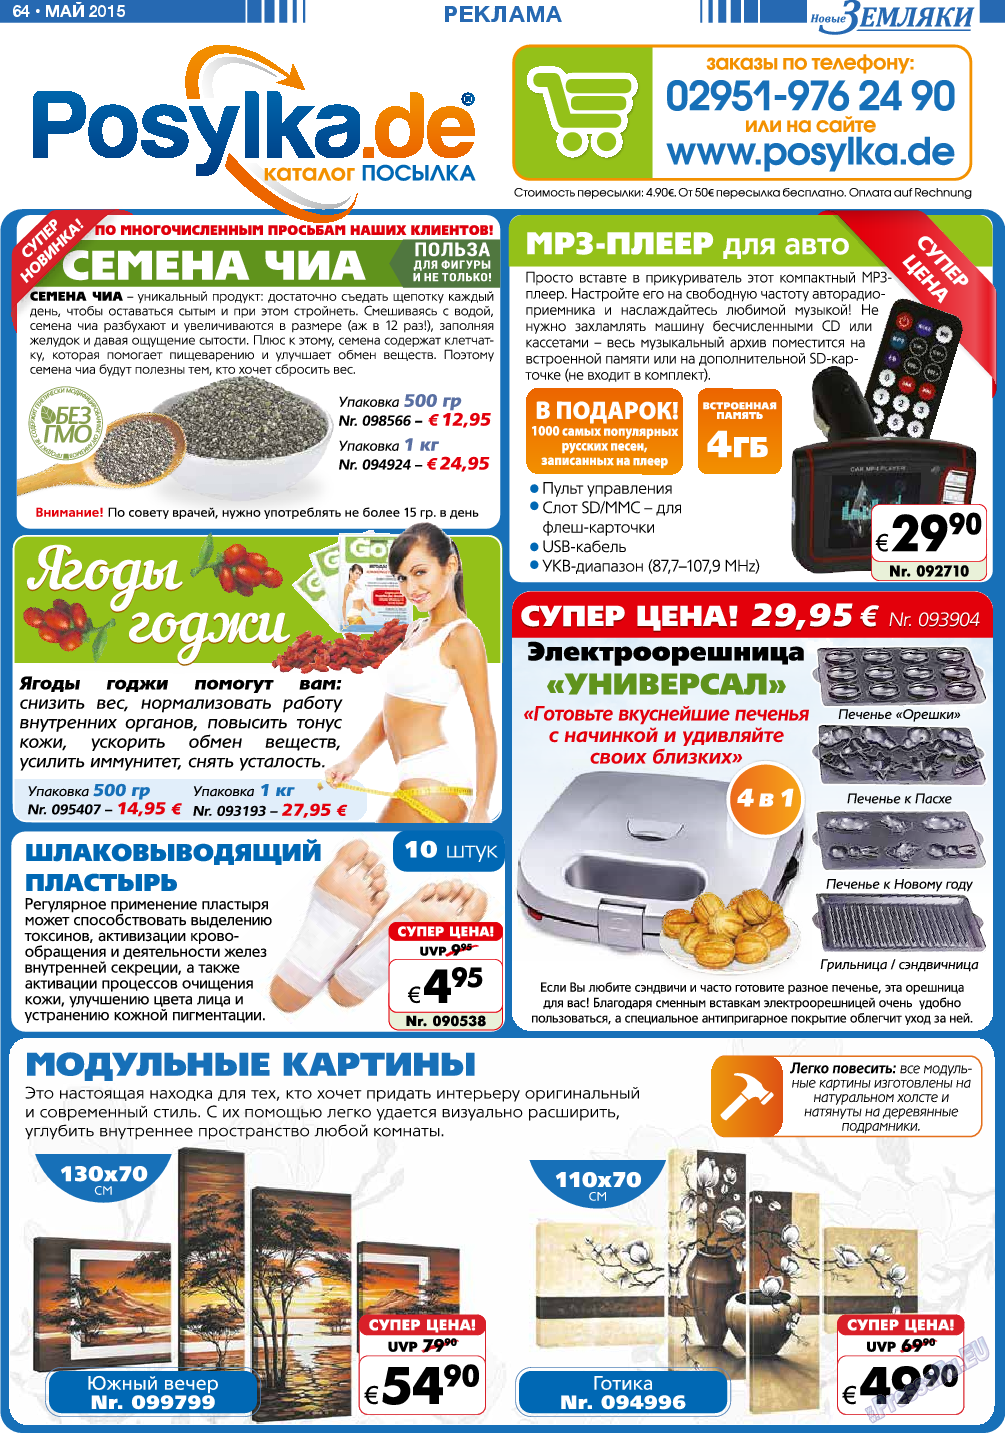 Новые Земляки (газета). 2015 год, номер 5, стр. 64